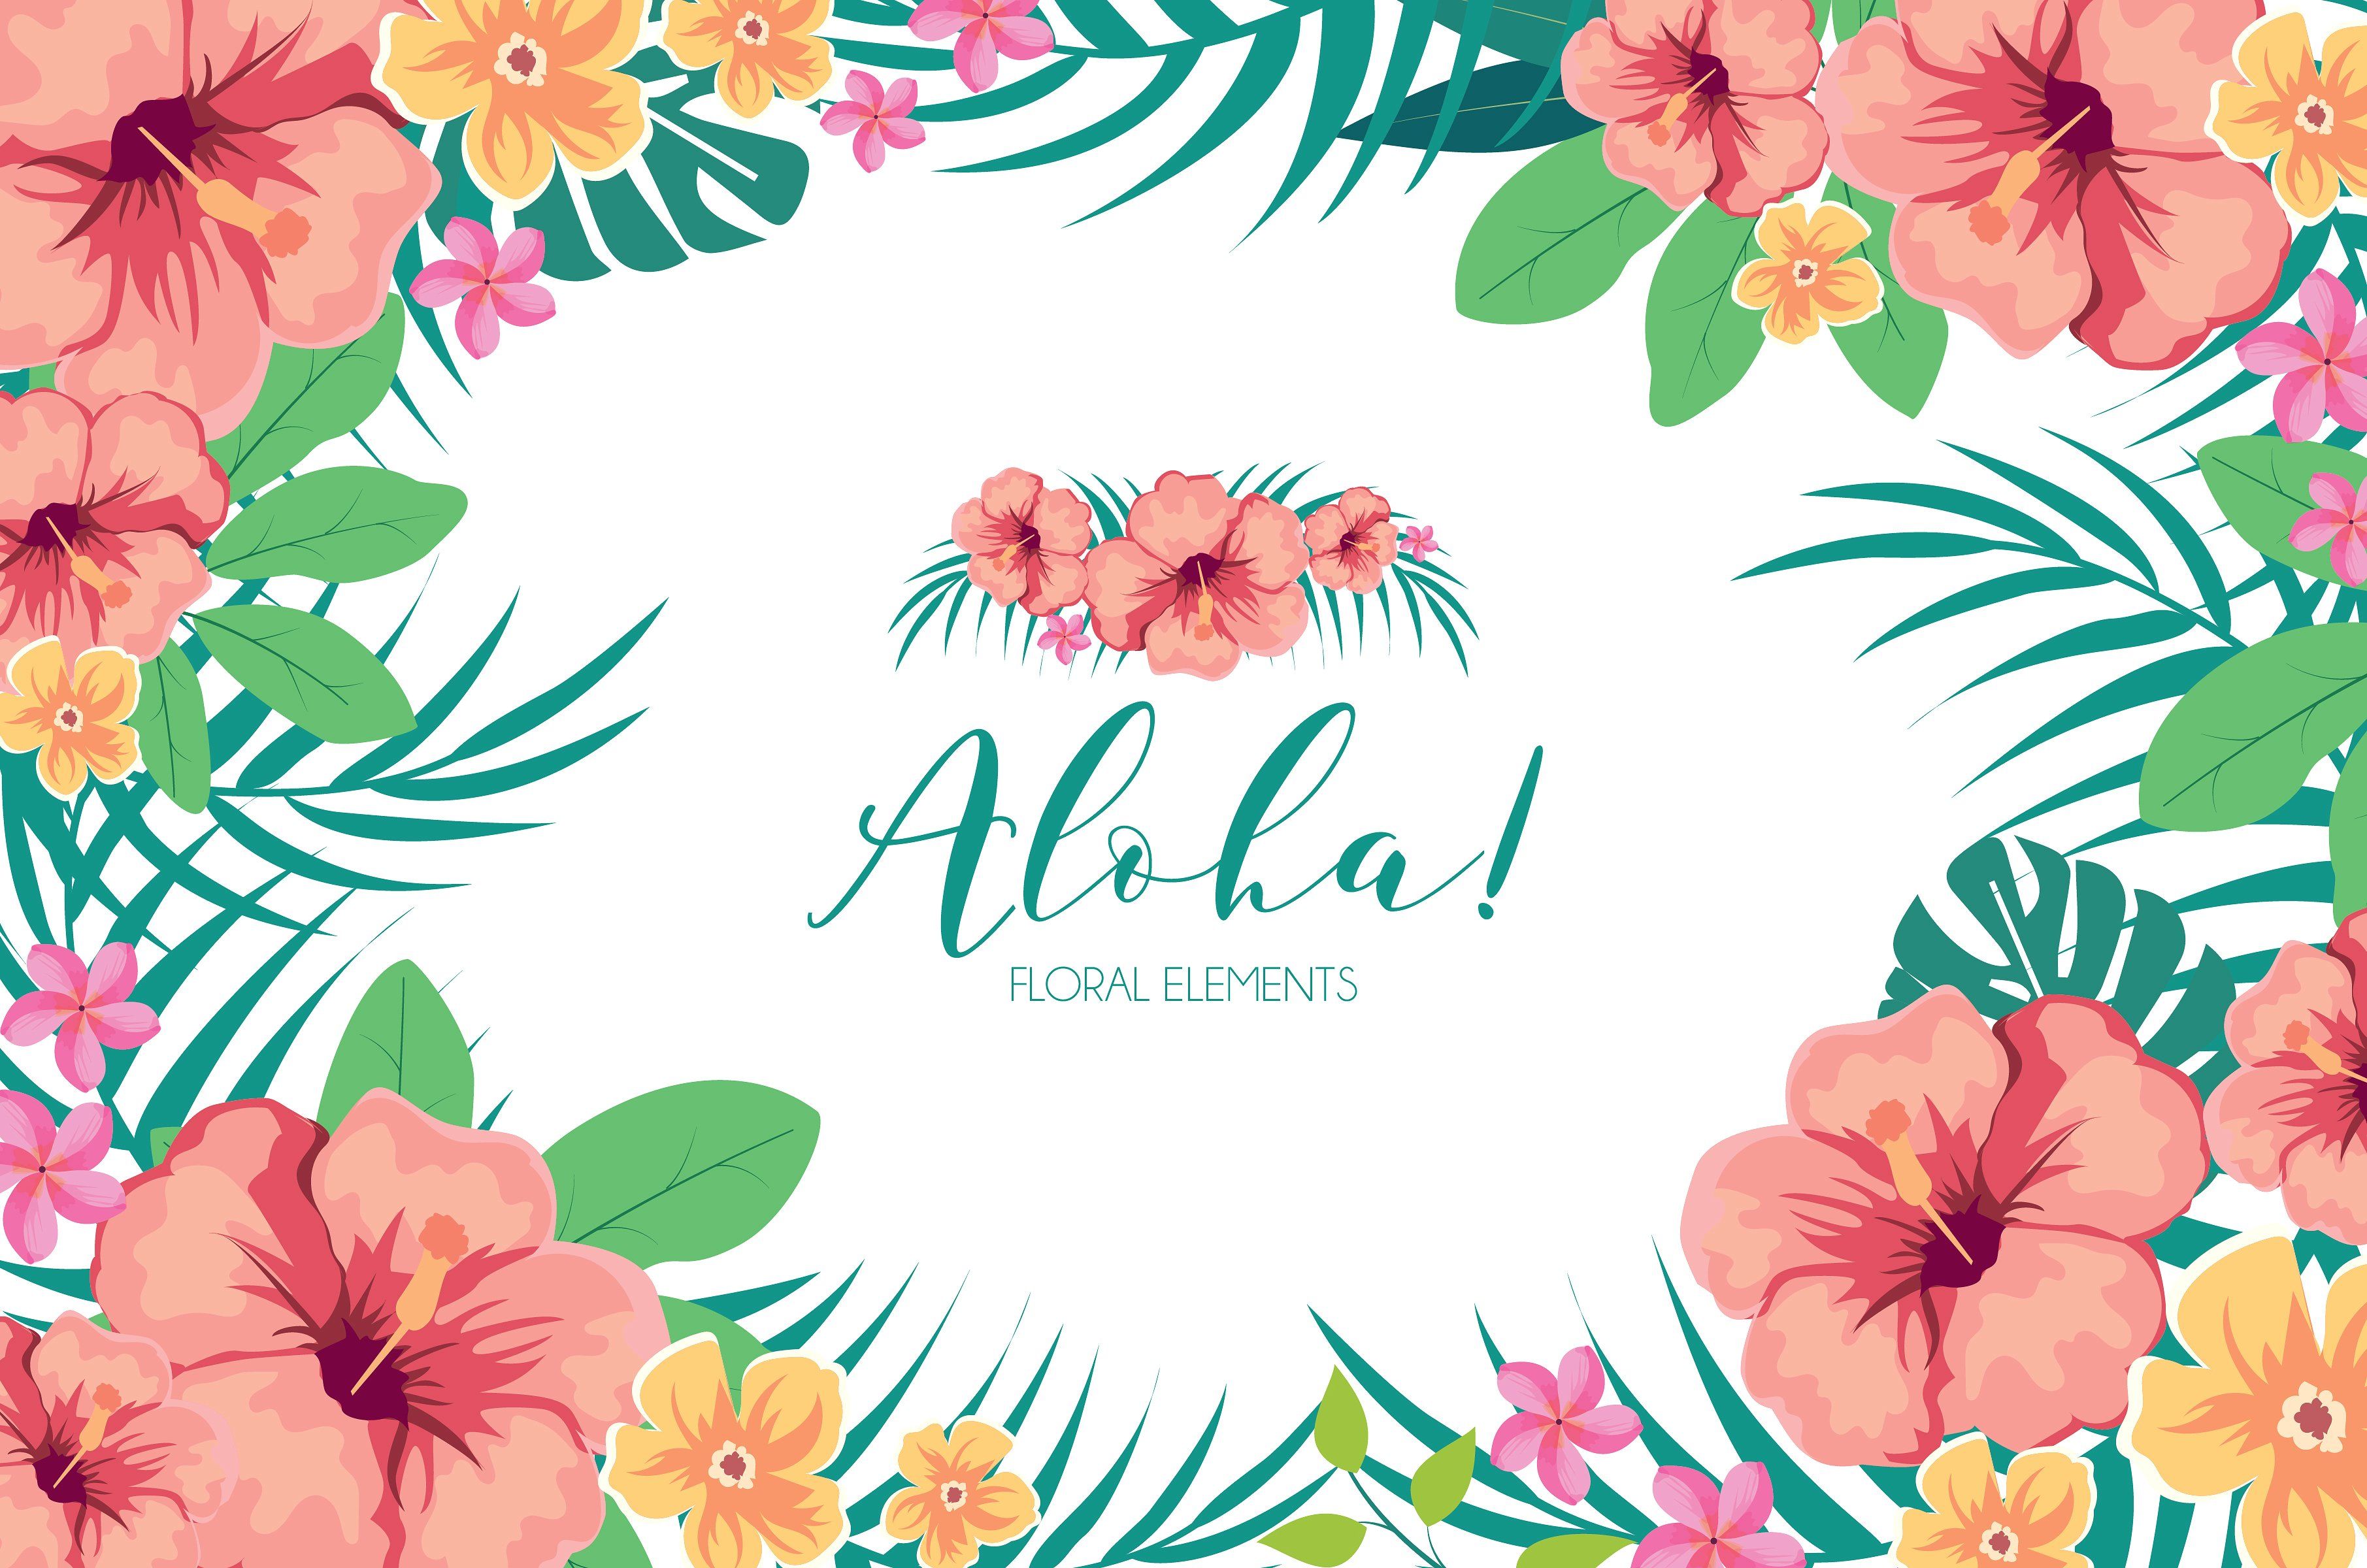 Hoa Havai clipart miễn phí: Truyền tải vẻ đẹp của hoa Havai với clipart miễn phí của chúng tôi. Với tất cả các loại hoa và màu sắc khác nhau, những cây cối và thiên nhiên tropic, bạn đang chờ gì mà không tải về sử dụng cho thiết kế của mình.